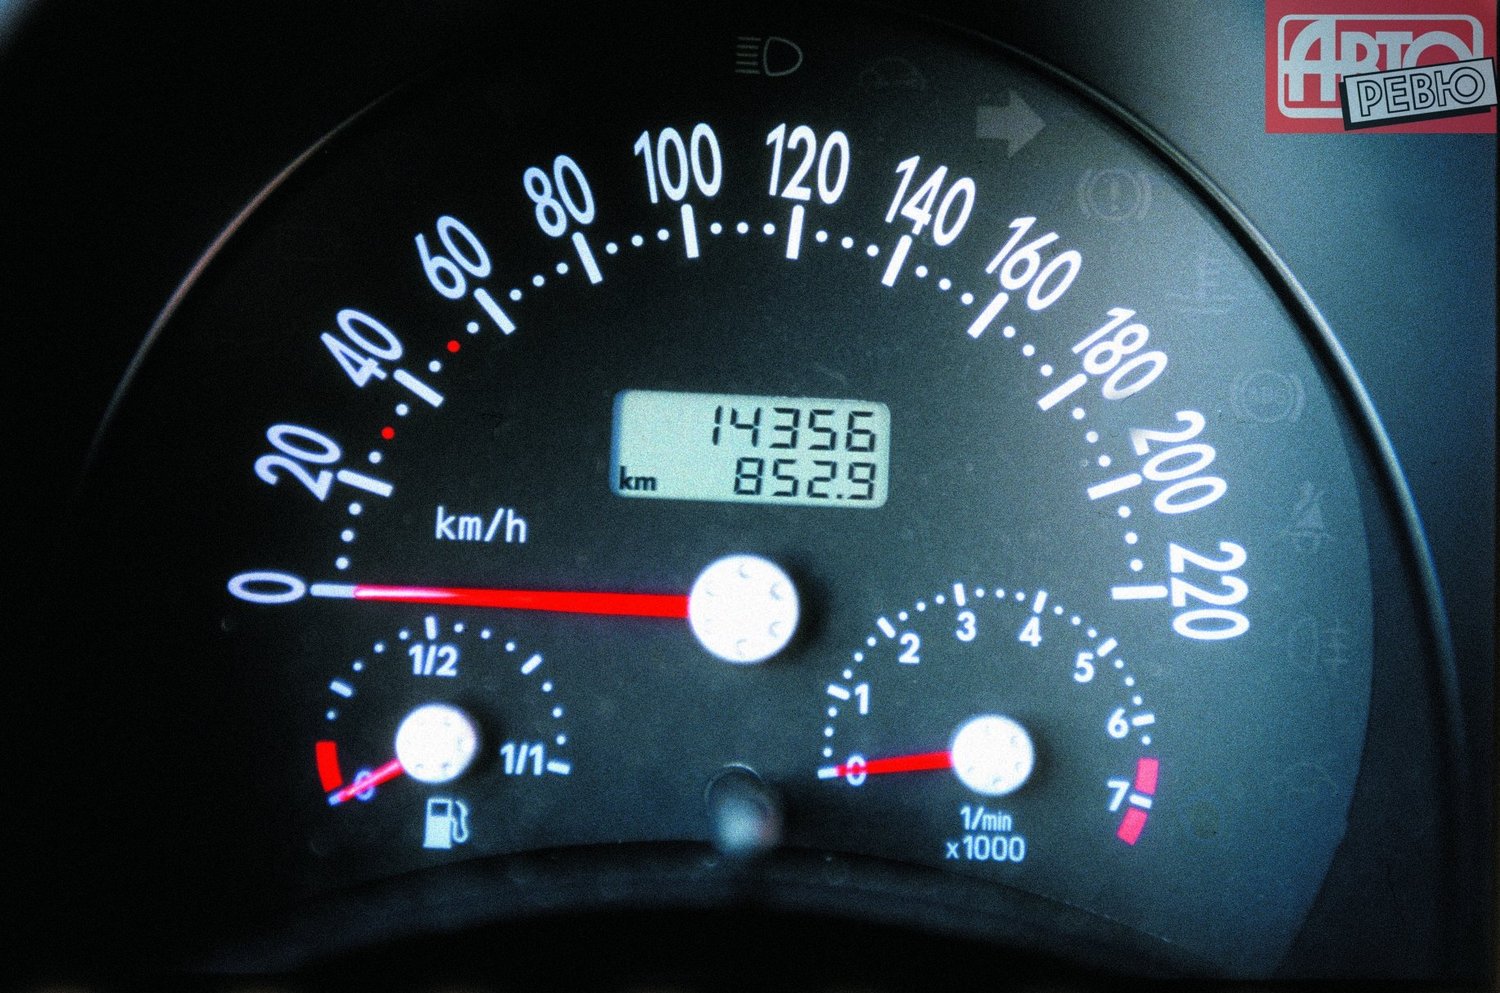 хэтчбек 3 дв. Volkswagen Beetle 1998 - 2005г выпуска модификация 1.4 MT (75 л.с.)